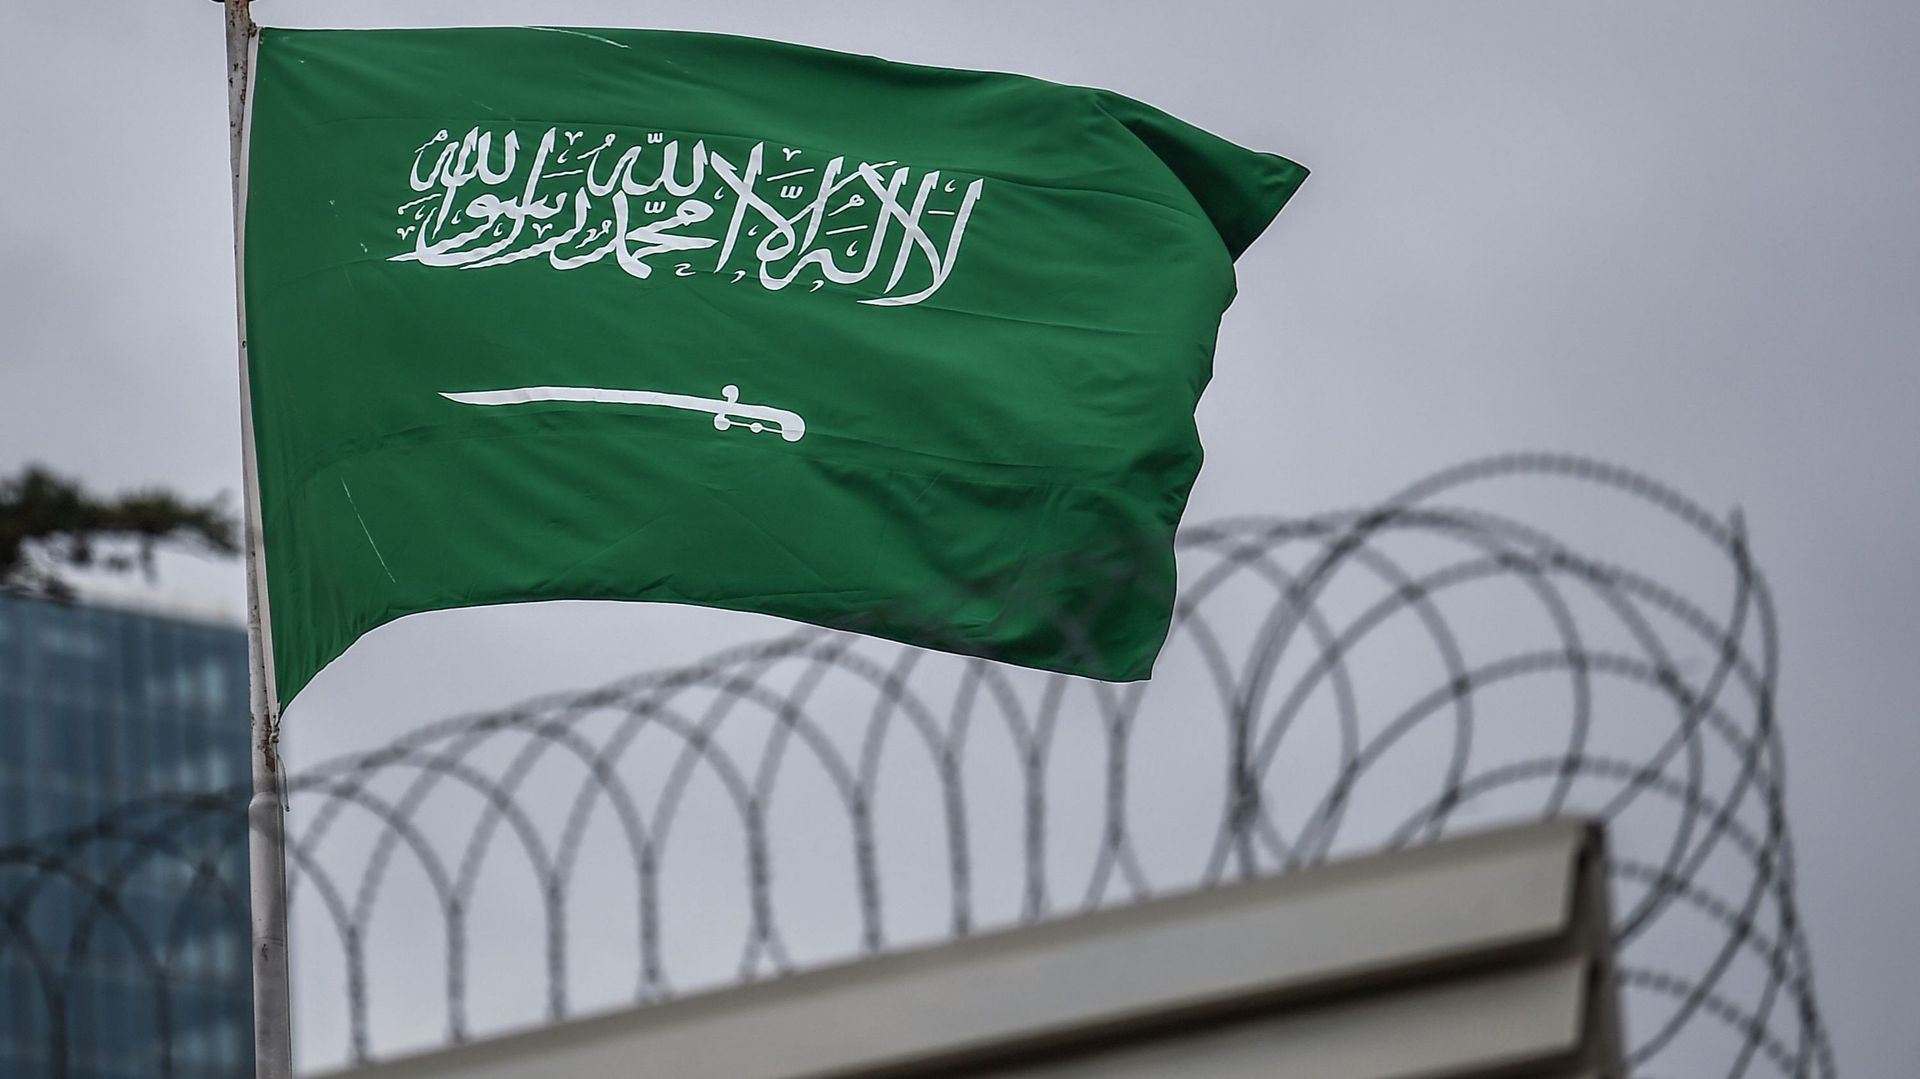 Le meurtre de Khashoggi "planifié et perpétré" par des représentants de l'Etat saoudien, selon l'ONU